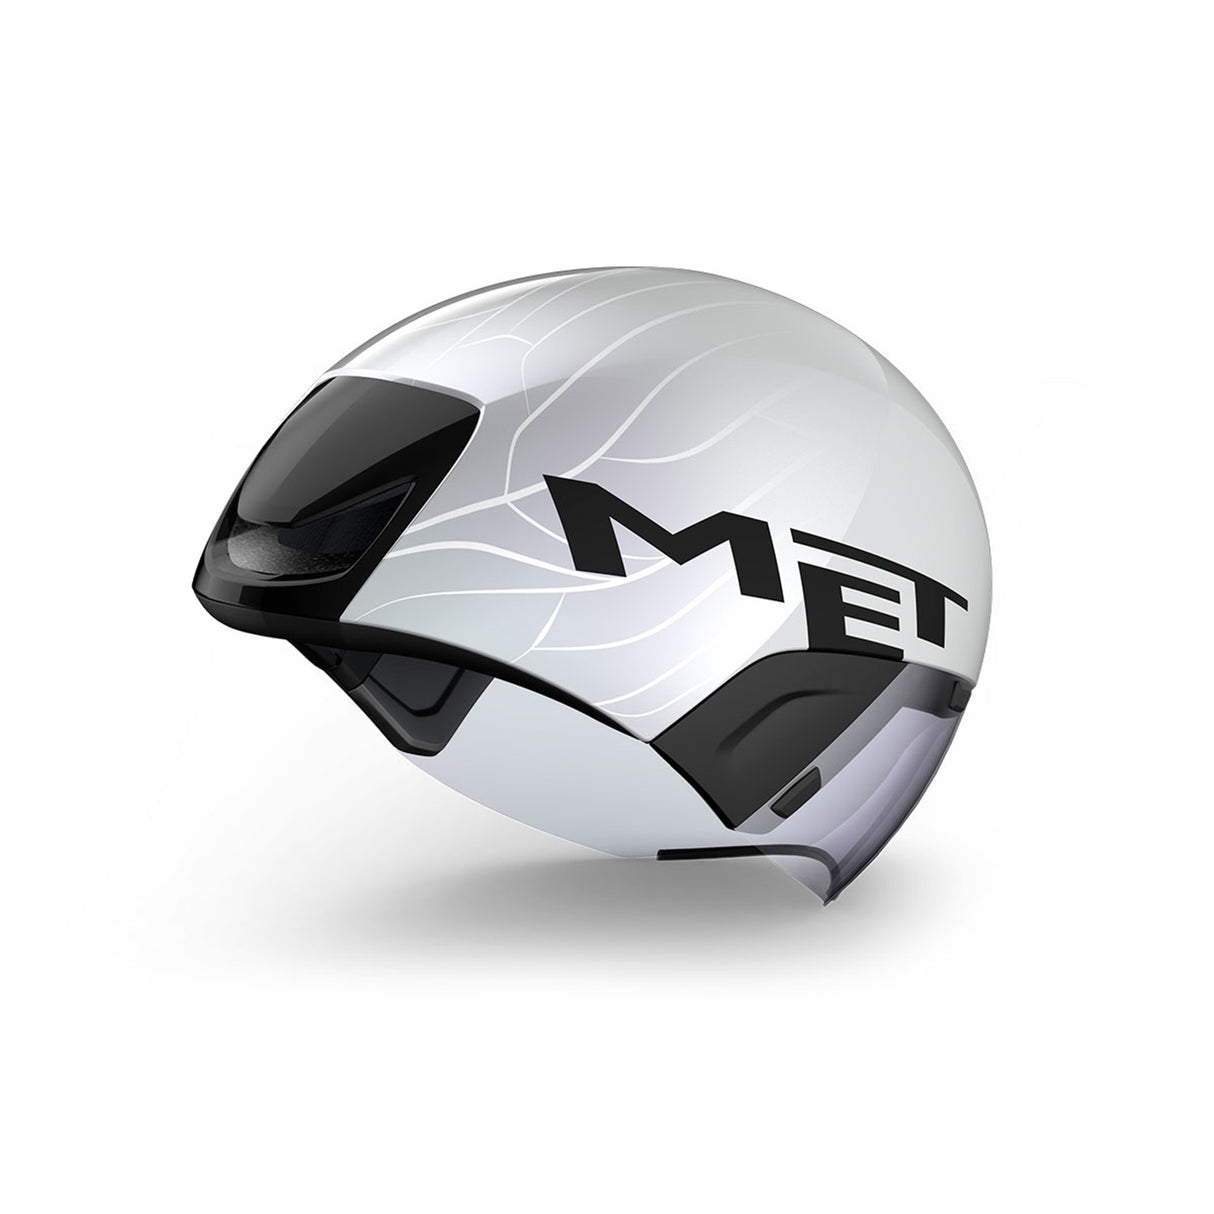 MET Codatronca TT Helmet